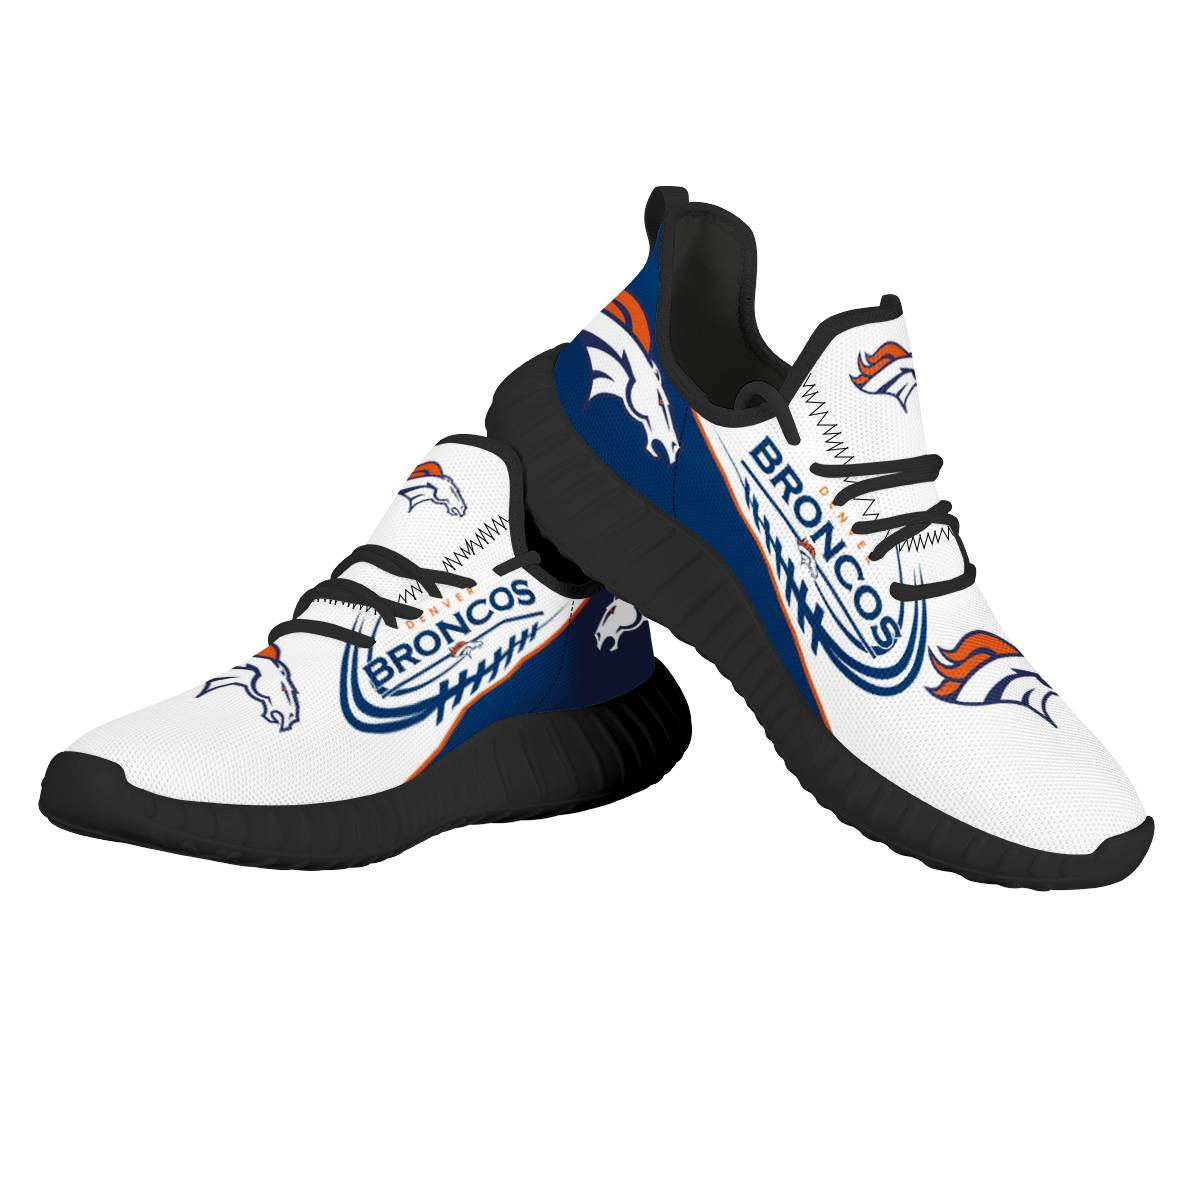 Women's NFL Denver Broncos Mesh Knit Sneakers/Shoes 005